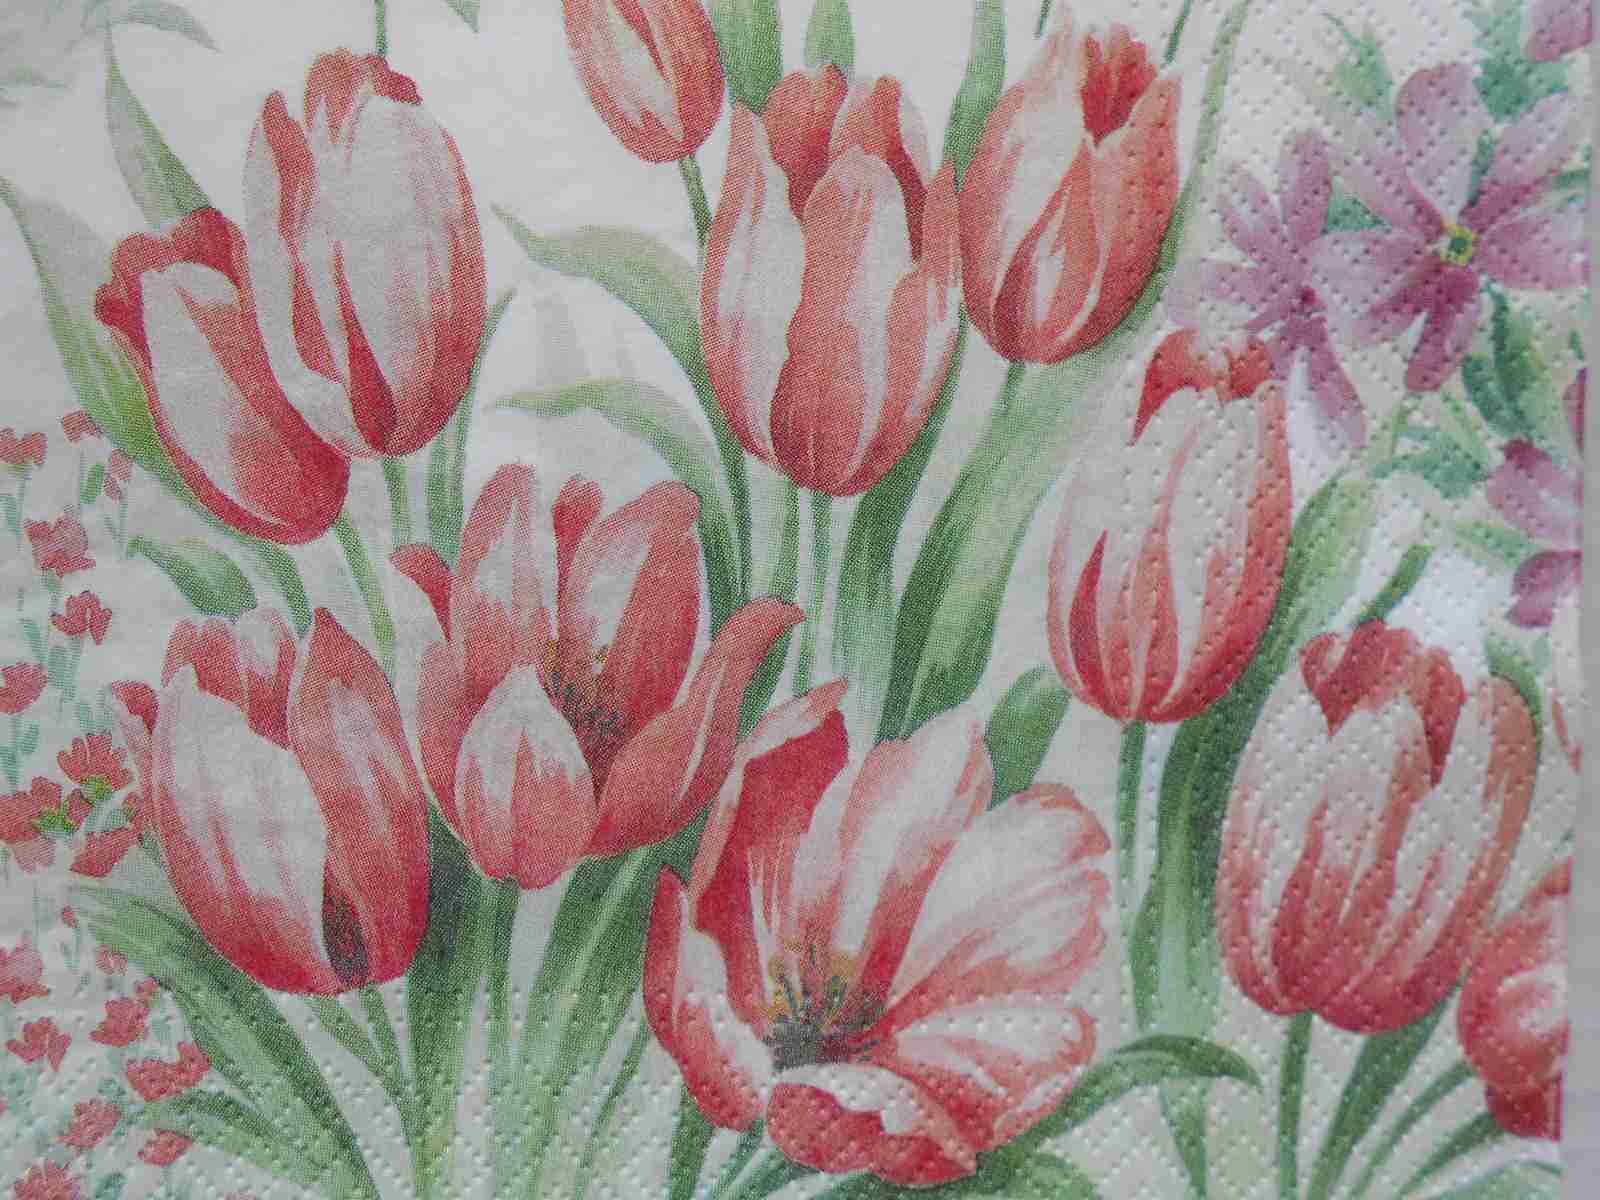 Red tulips decoupage paper napkins – Decoupage Paper Online Shop